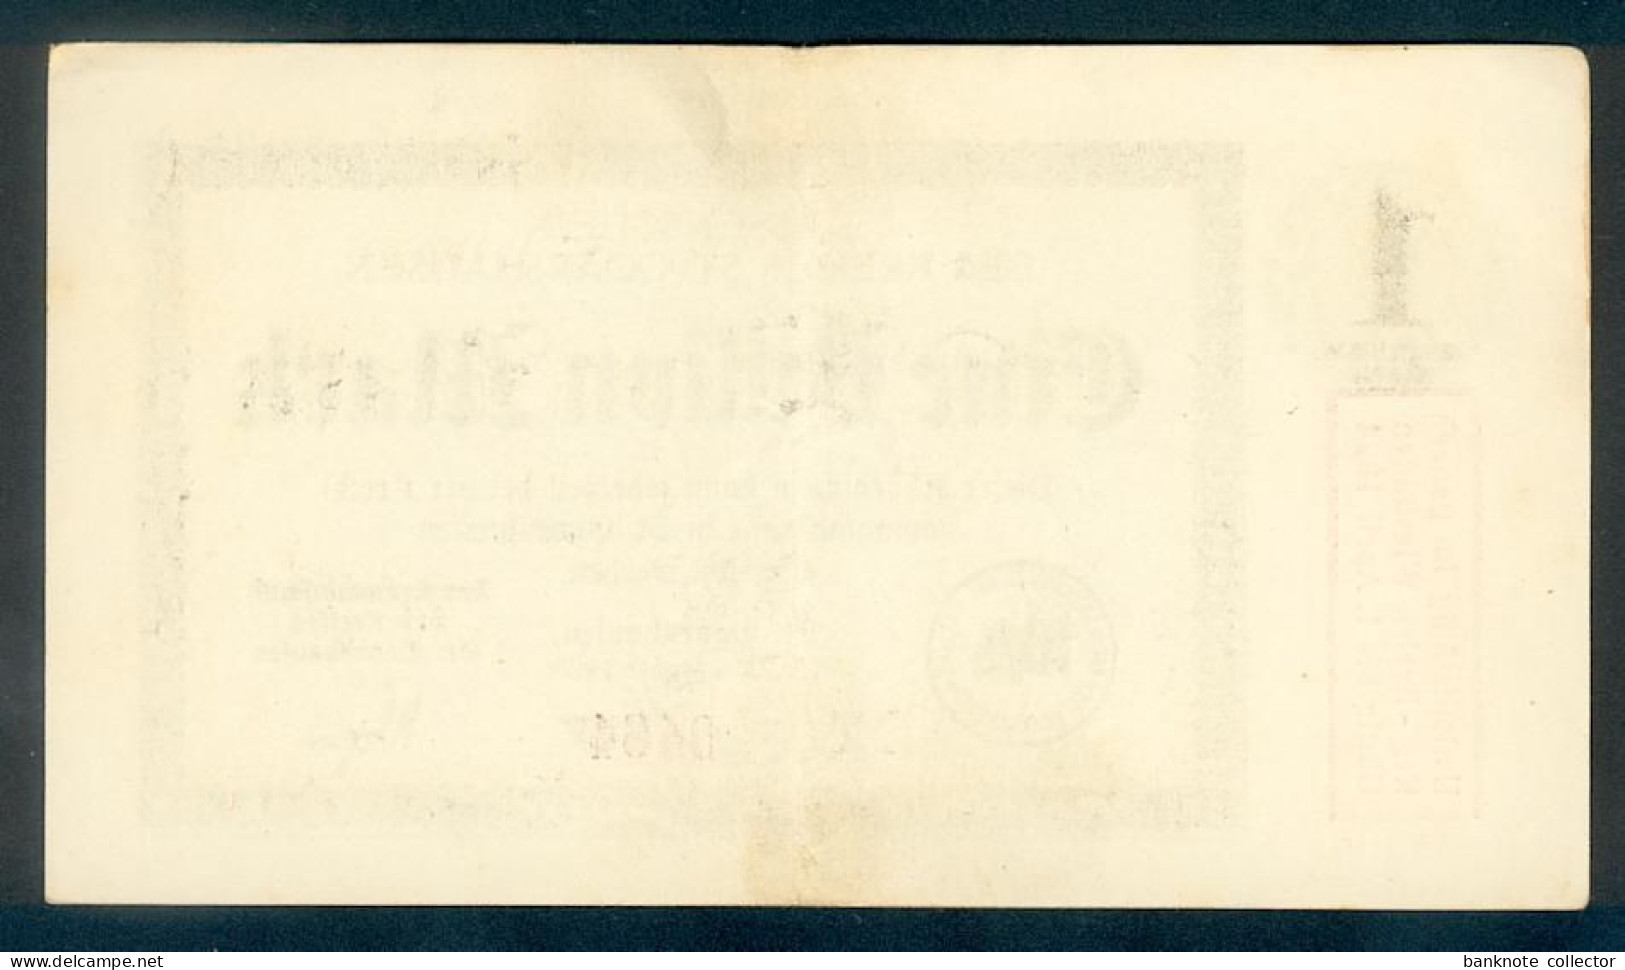 Deutschland, Germany, St. Goarshausen - 1 Billion Mark, 1923 ! - 1 Billion Mark